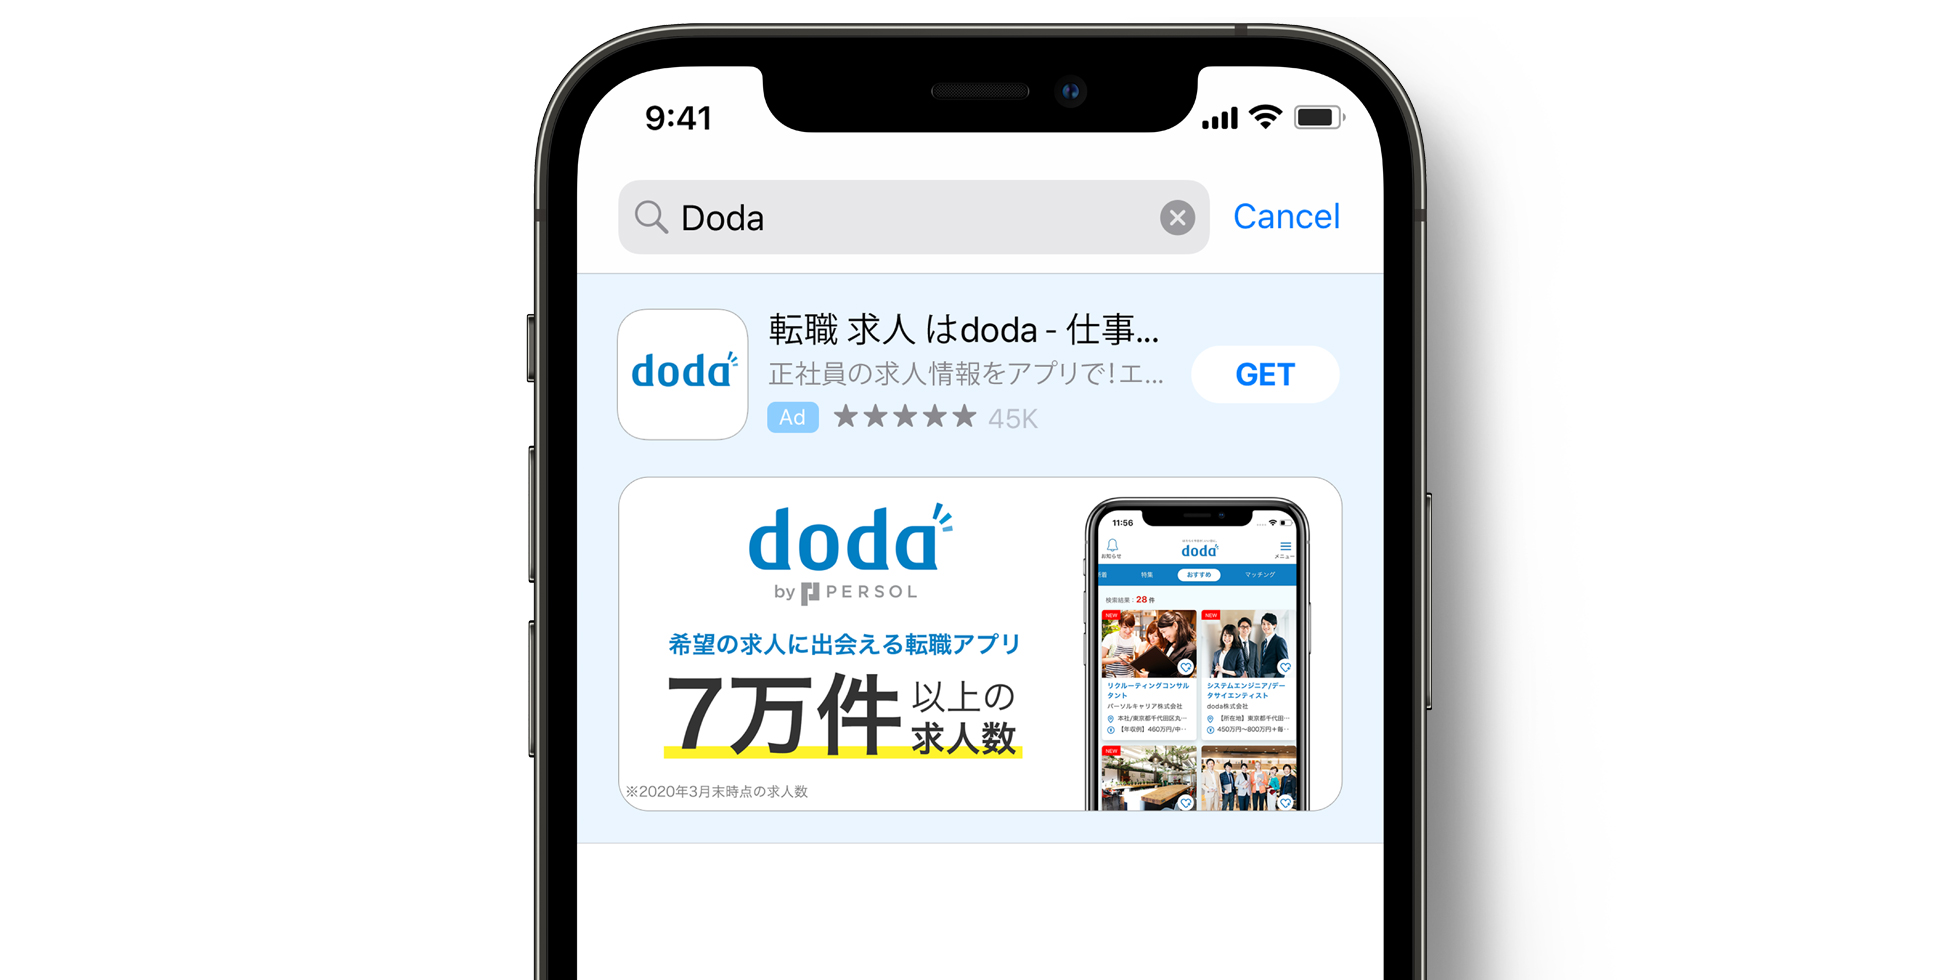 Publicité de doda dans l’App Store